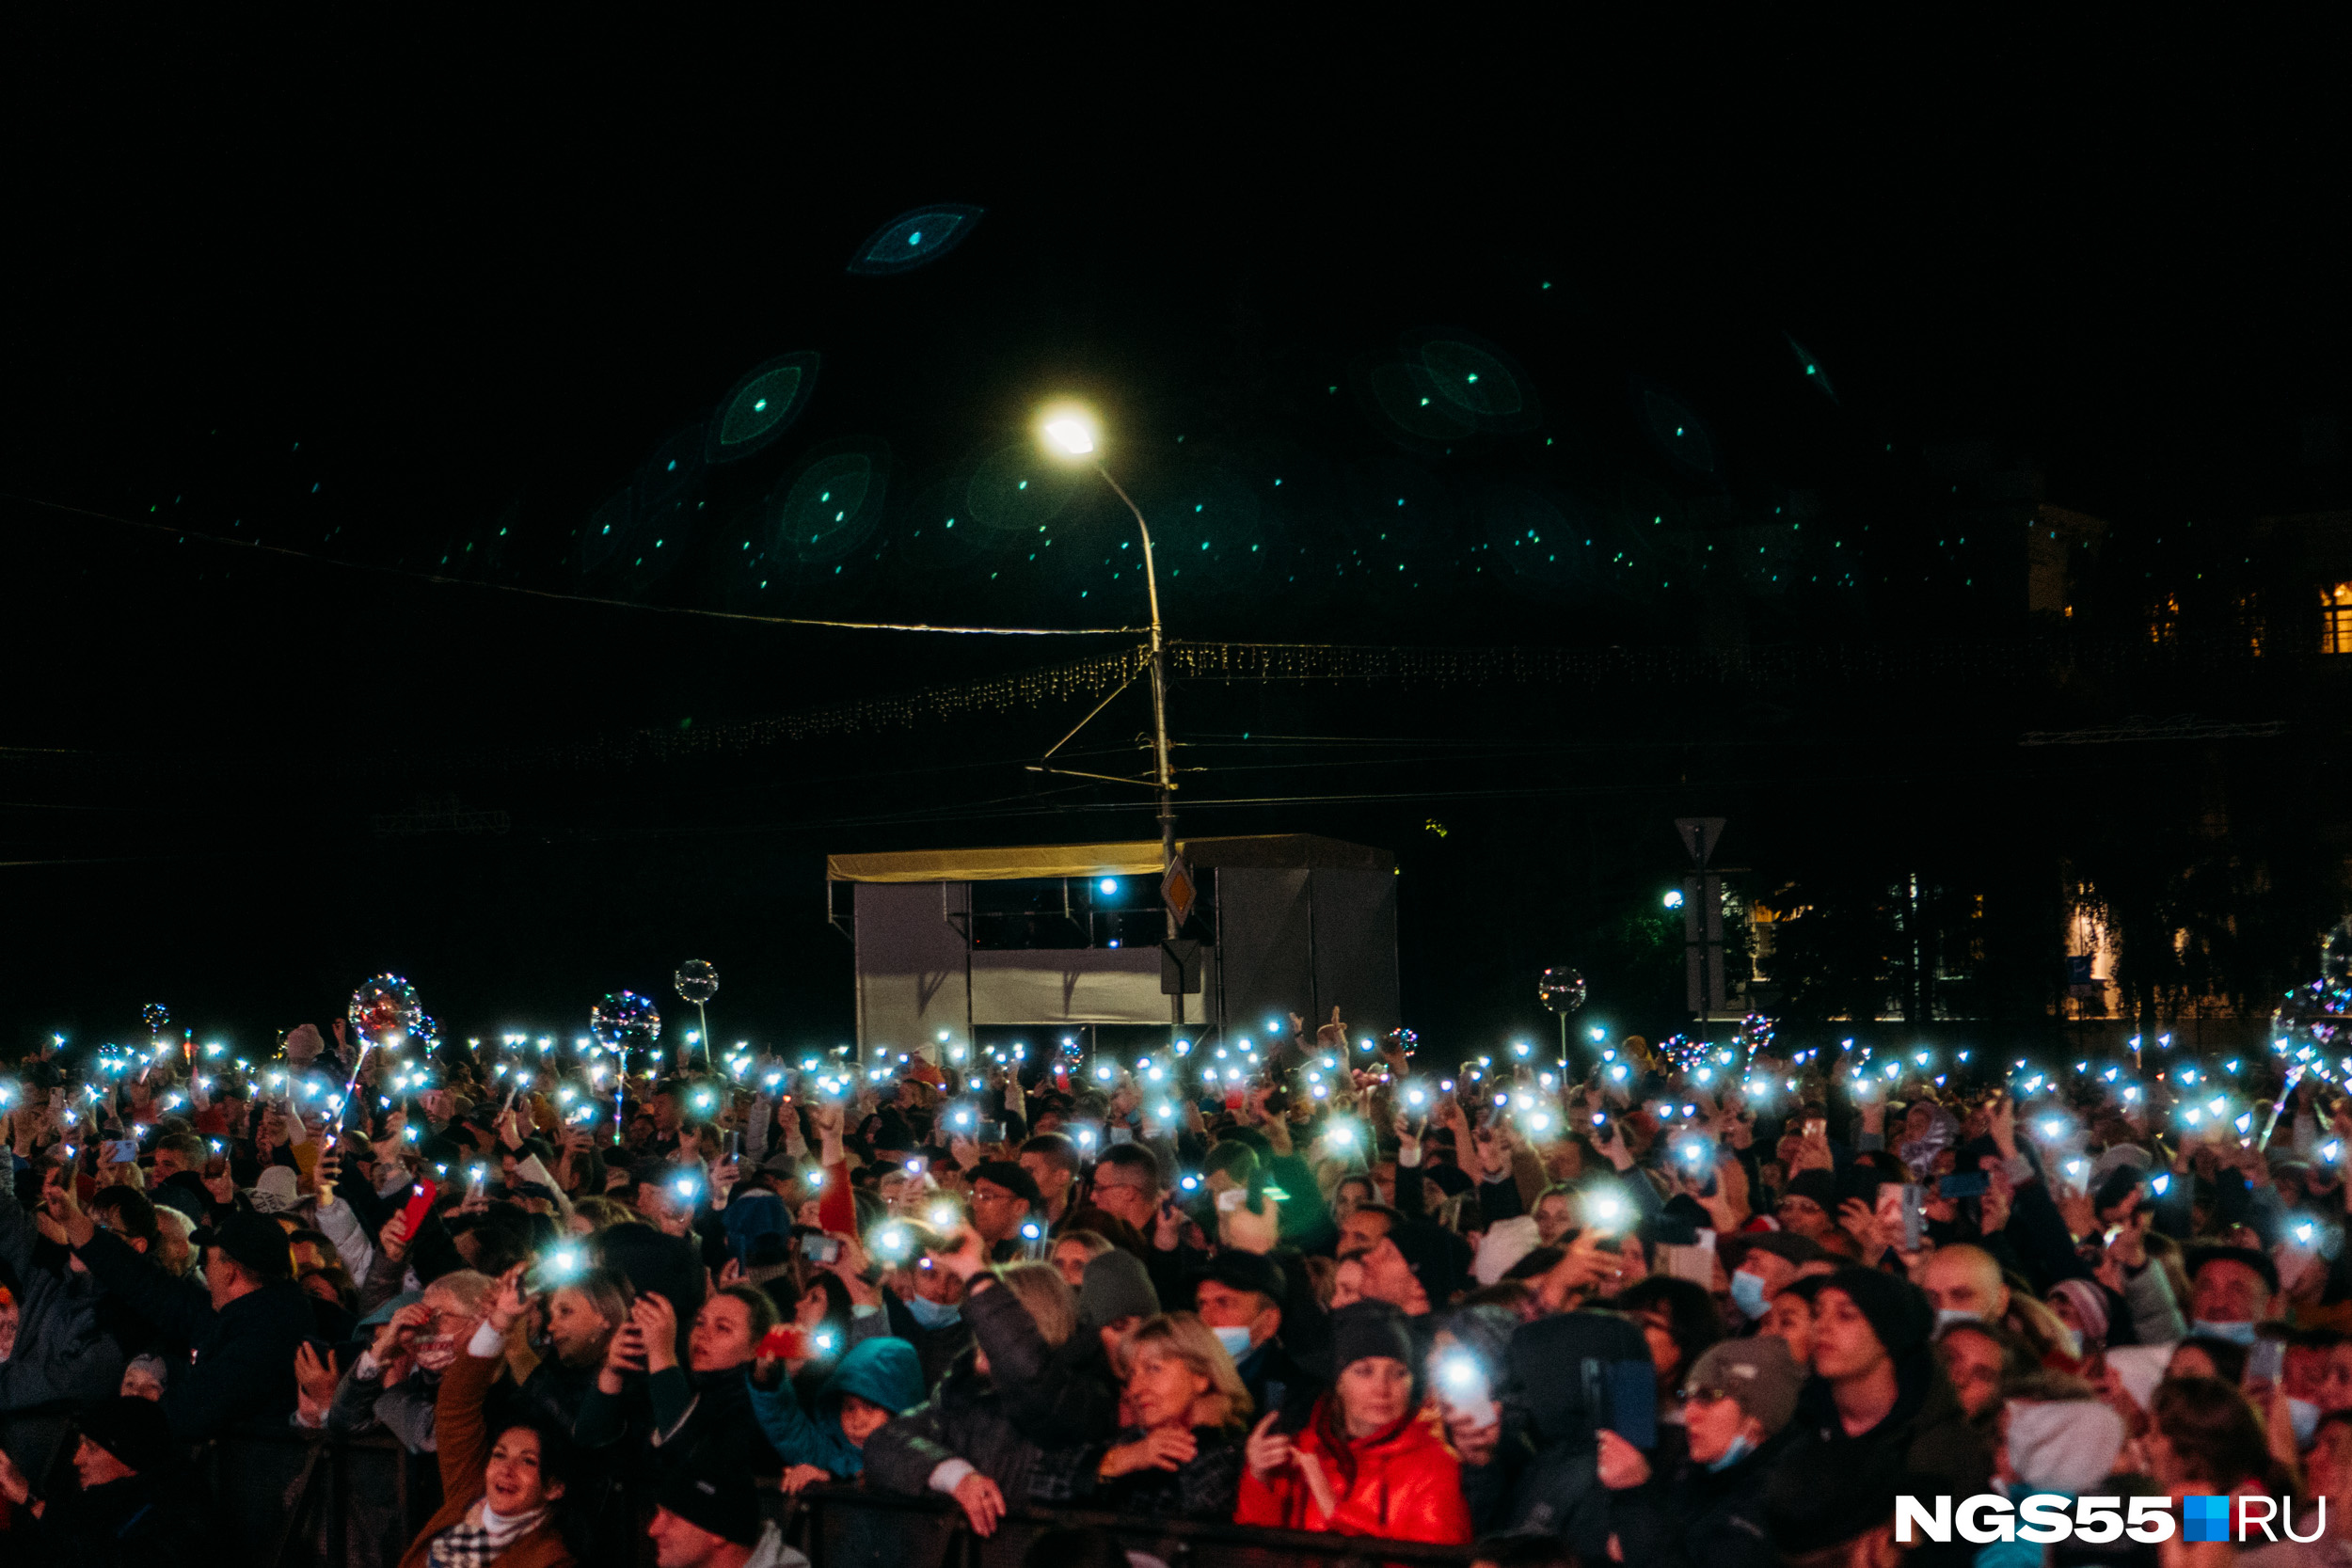 Омичи зажигали фонарики на телефонах по просьбе певца — вспышки причудливо отражались над толпой зрителей